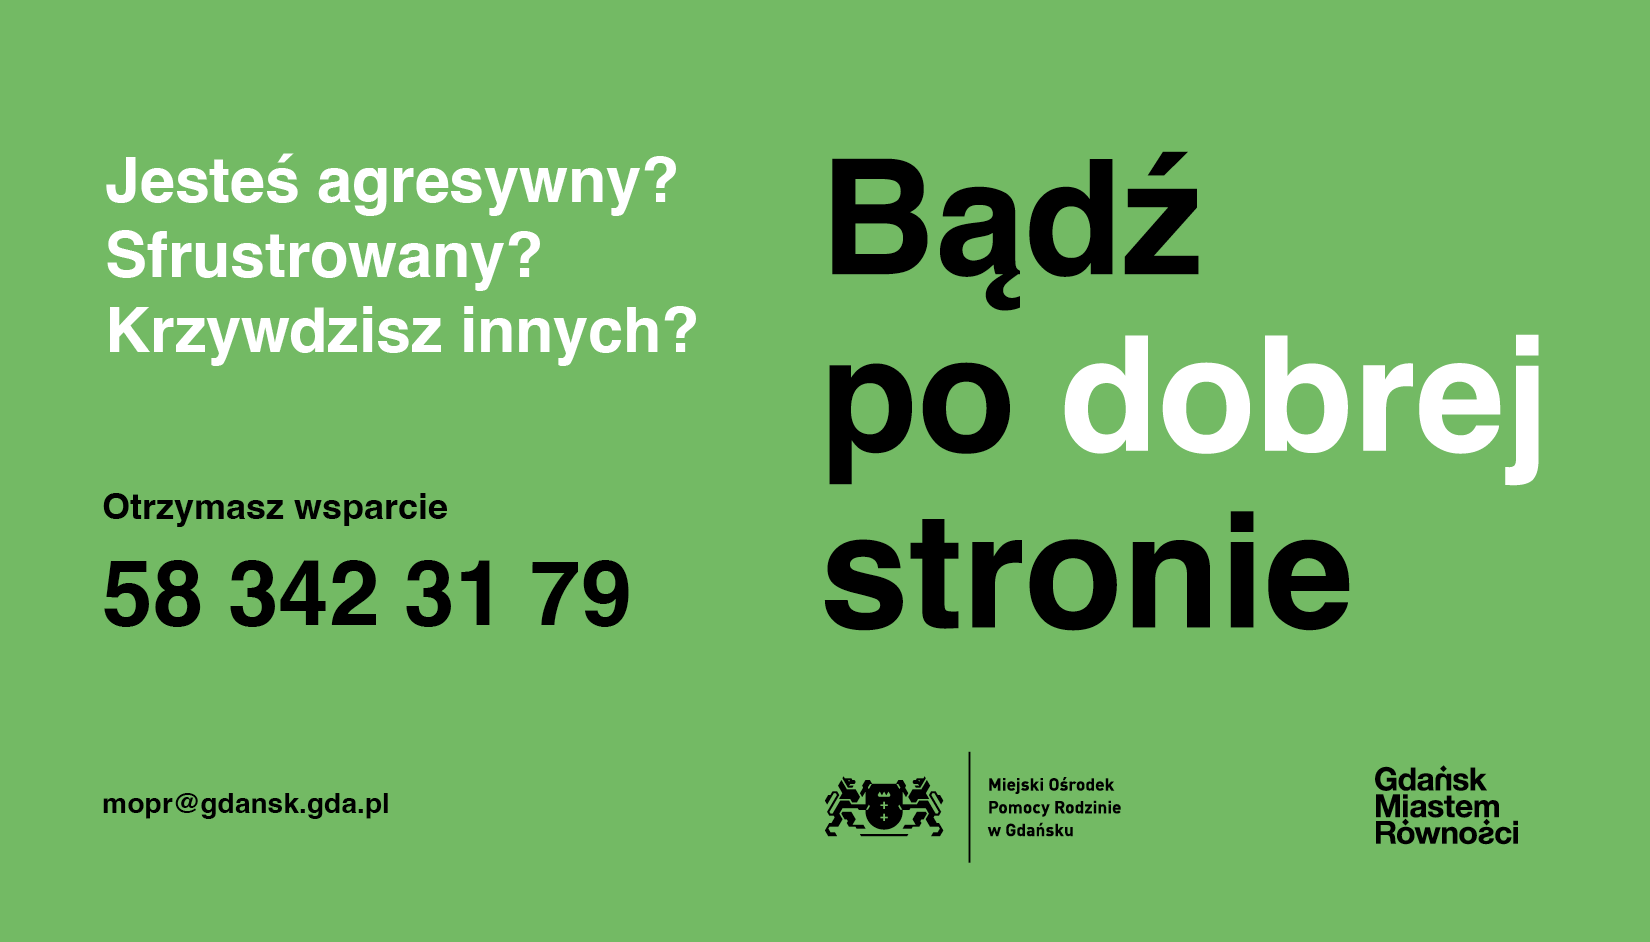 badz po dobrej stronie plakat kampanii gdanskiego mopr poziom 